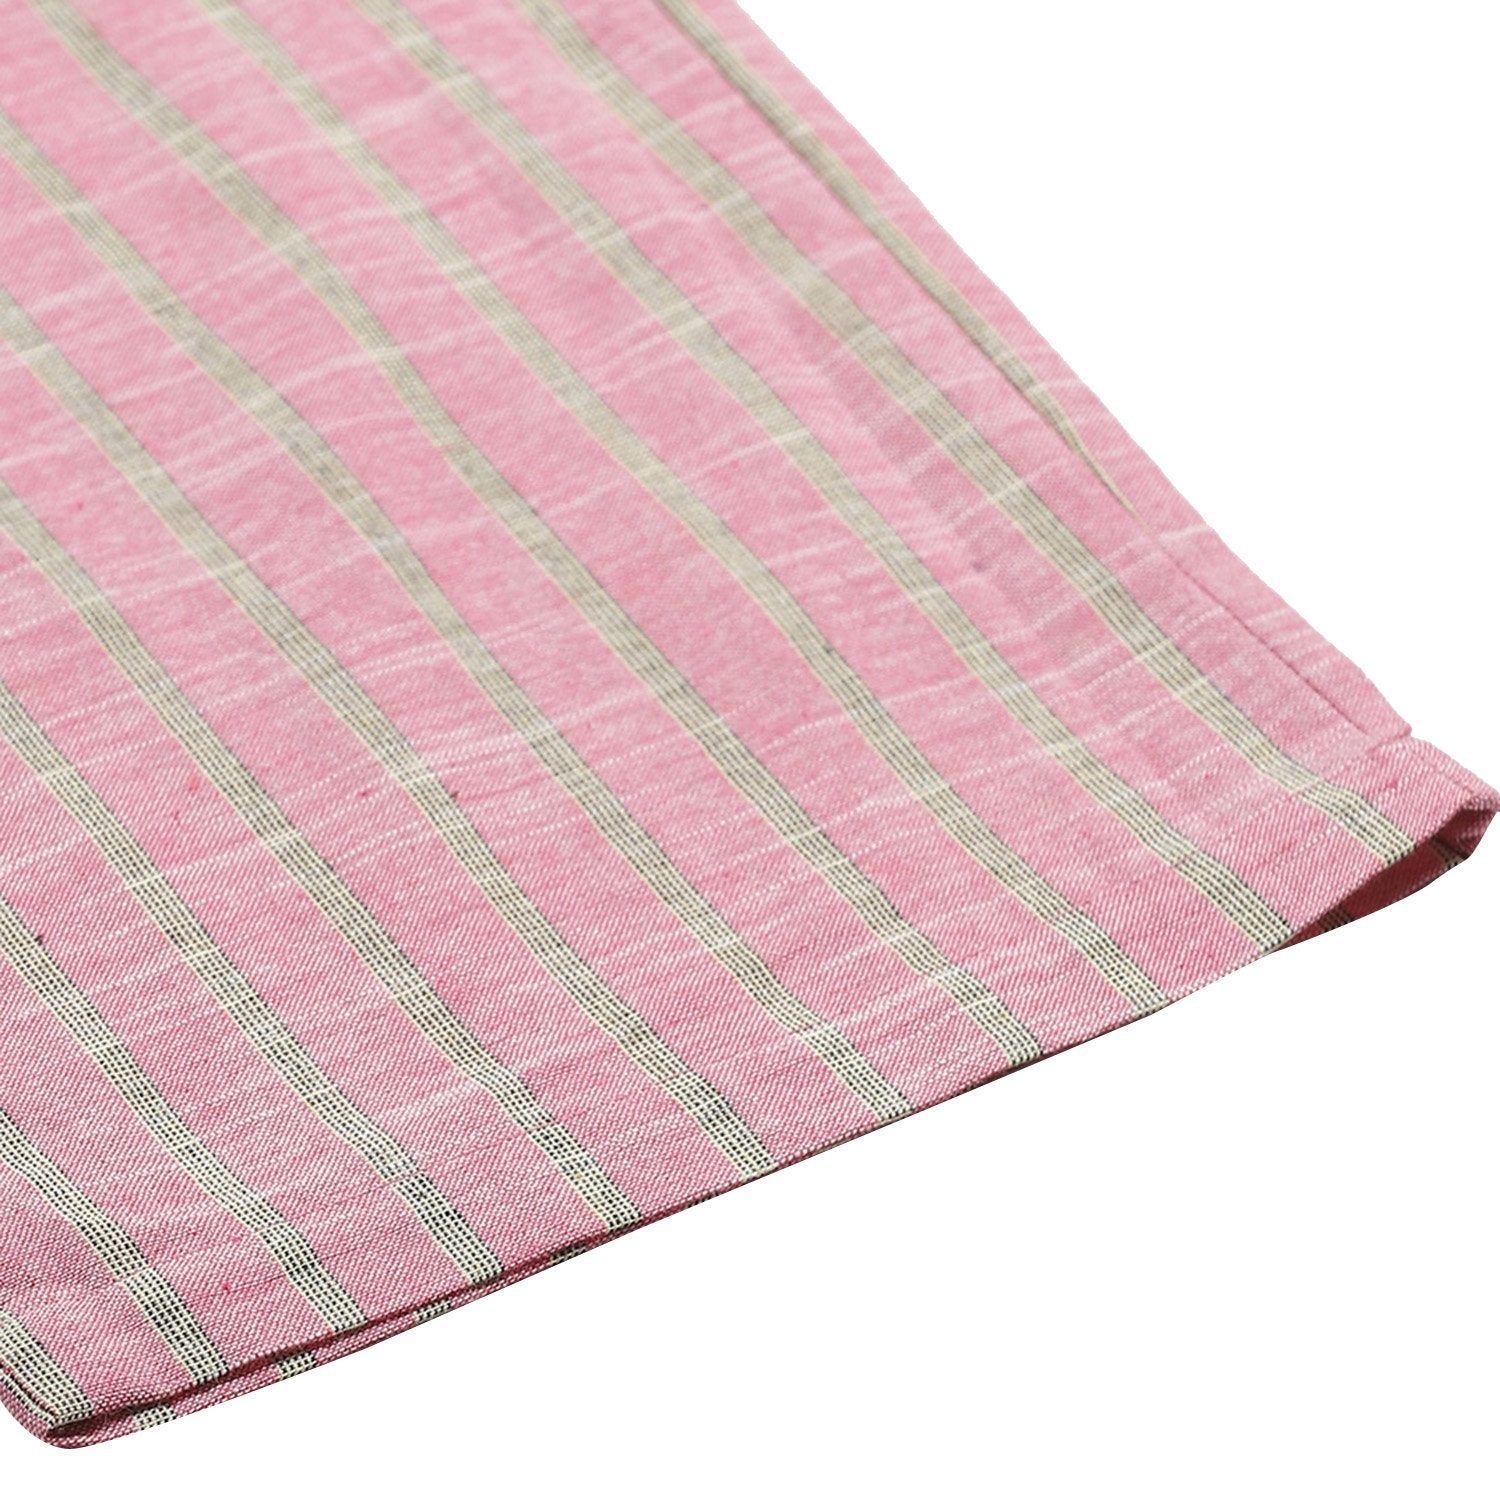 Women Pink Cotton Cullote Trouser by Myshka (1 Pc Set)